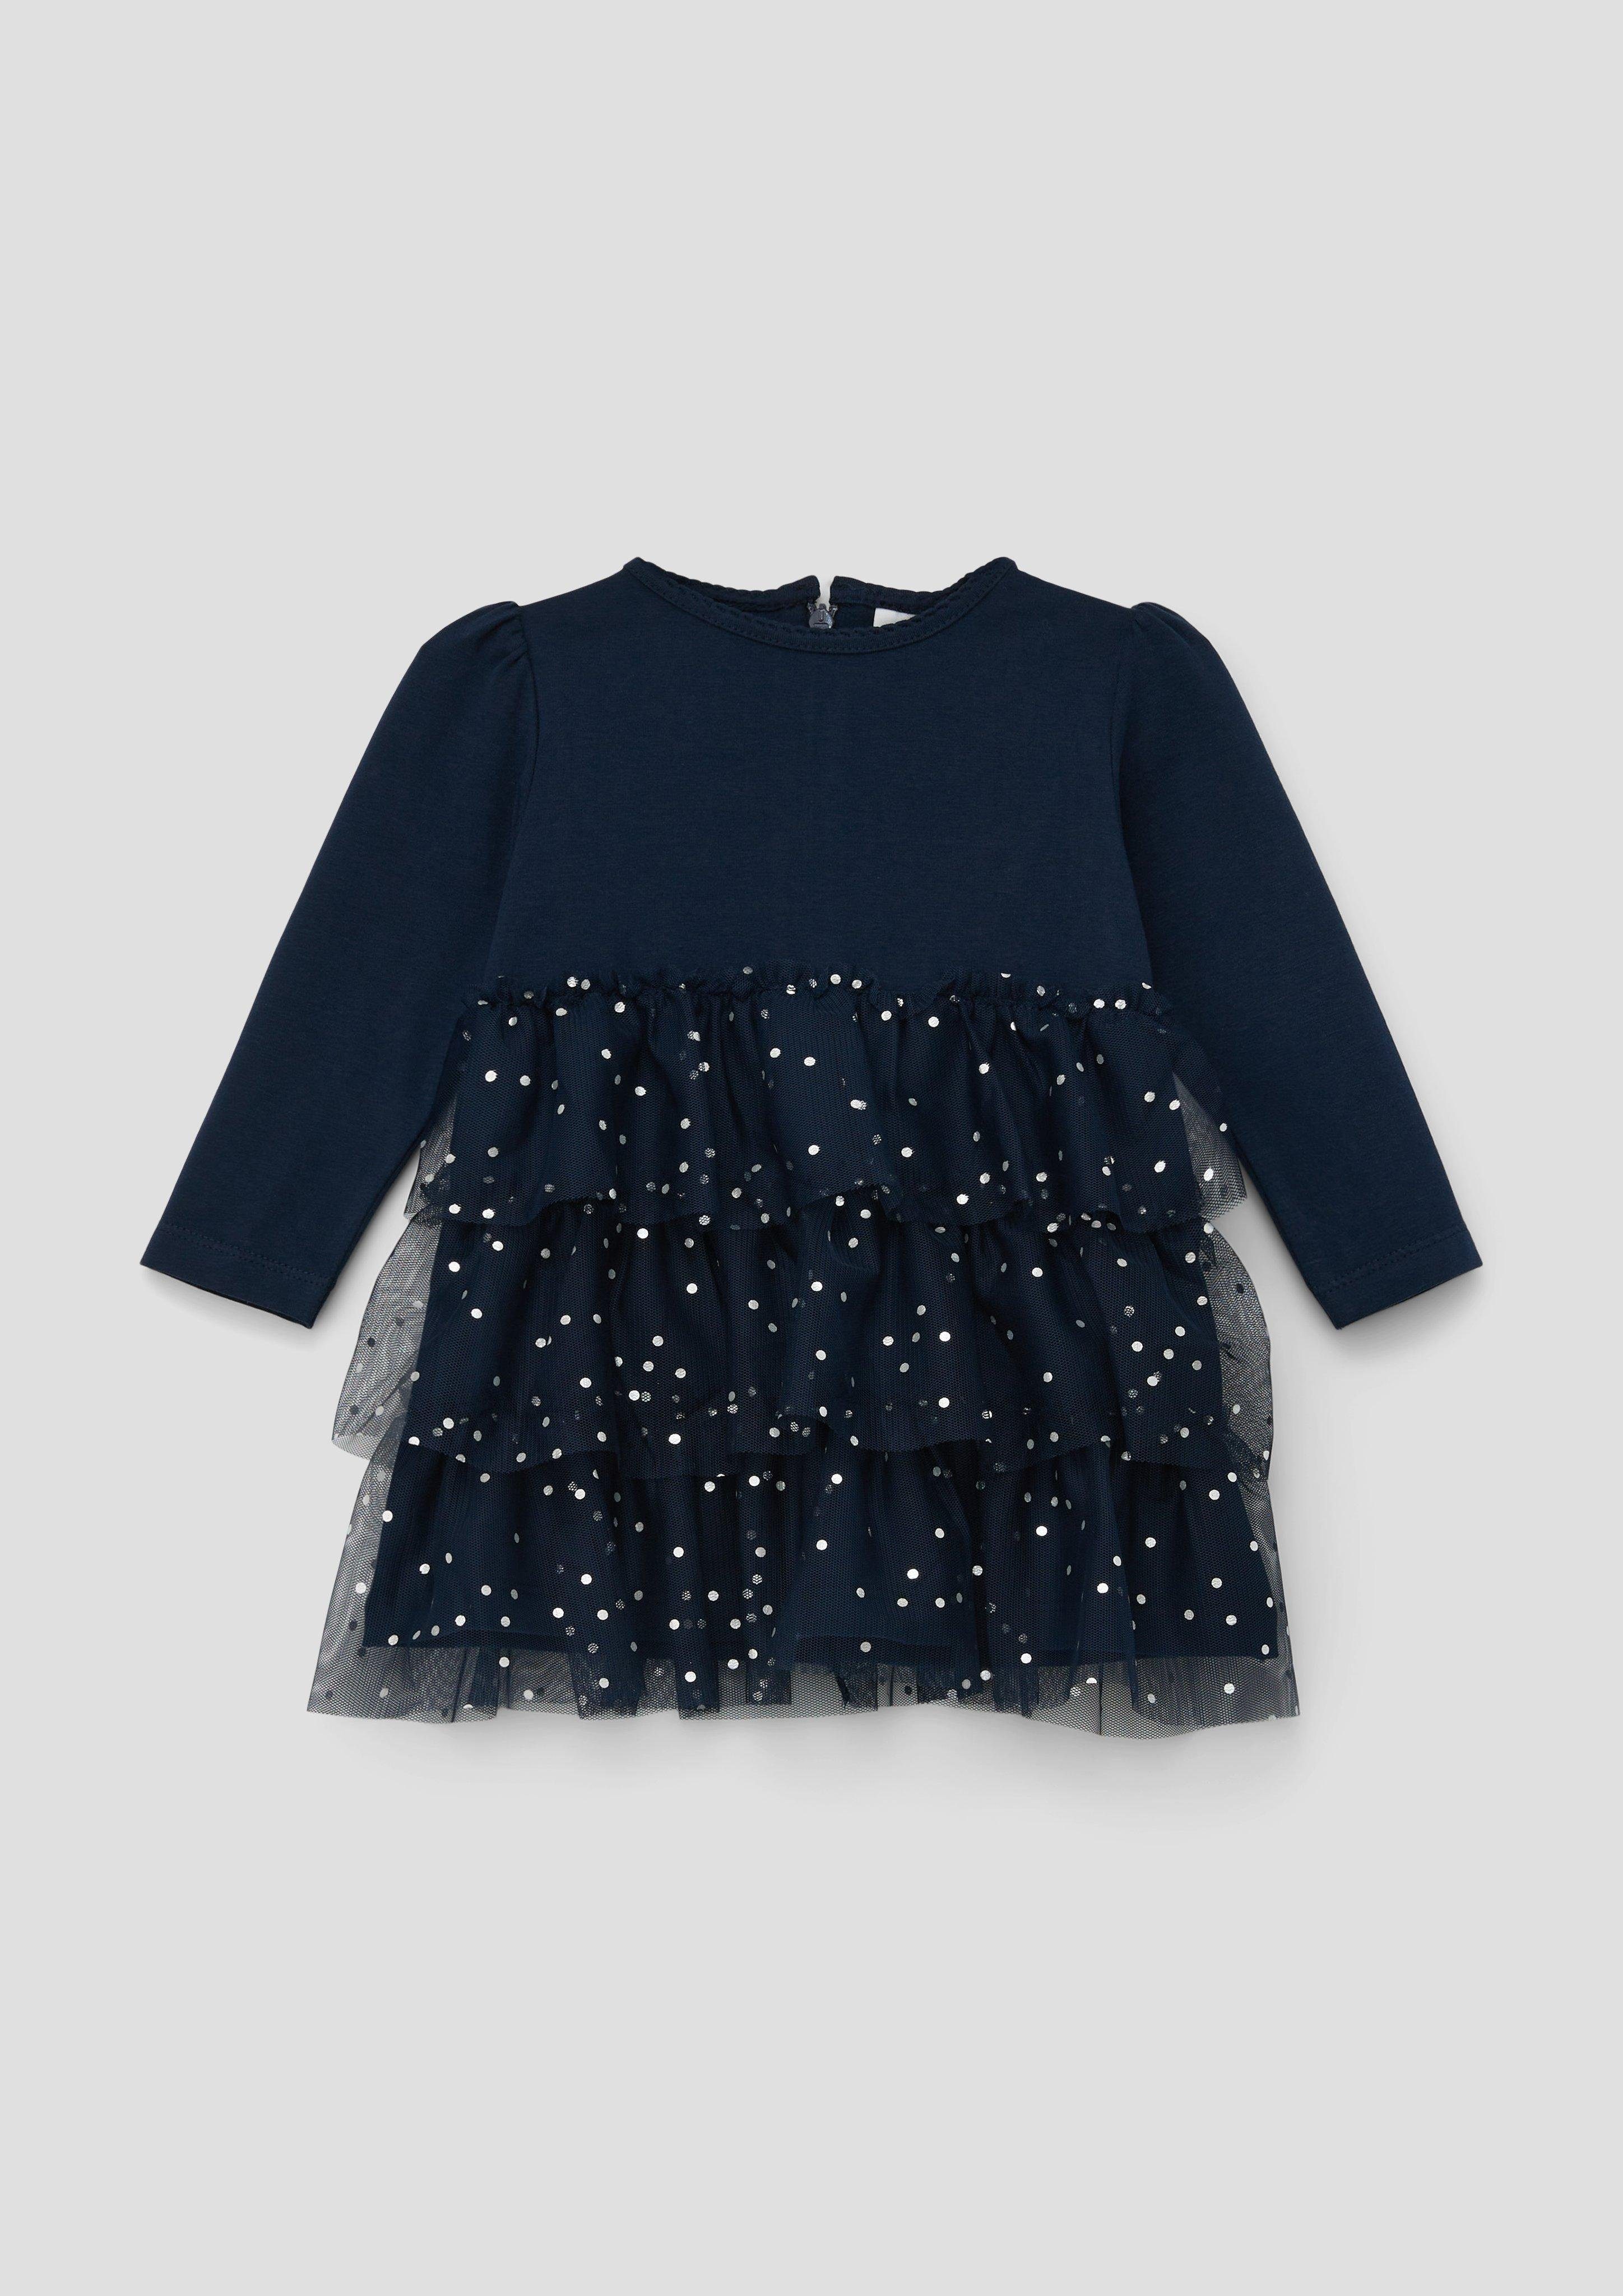 OTTO | online s.Oliver kaufen Babykleider